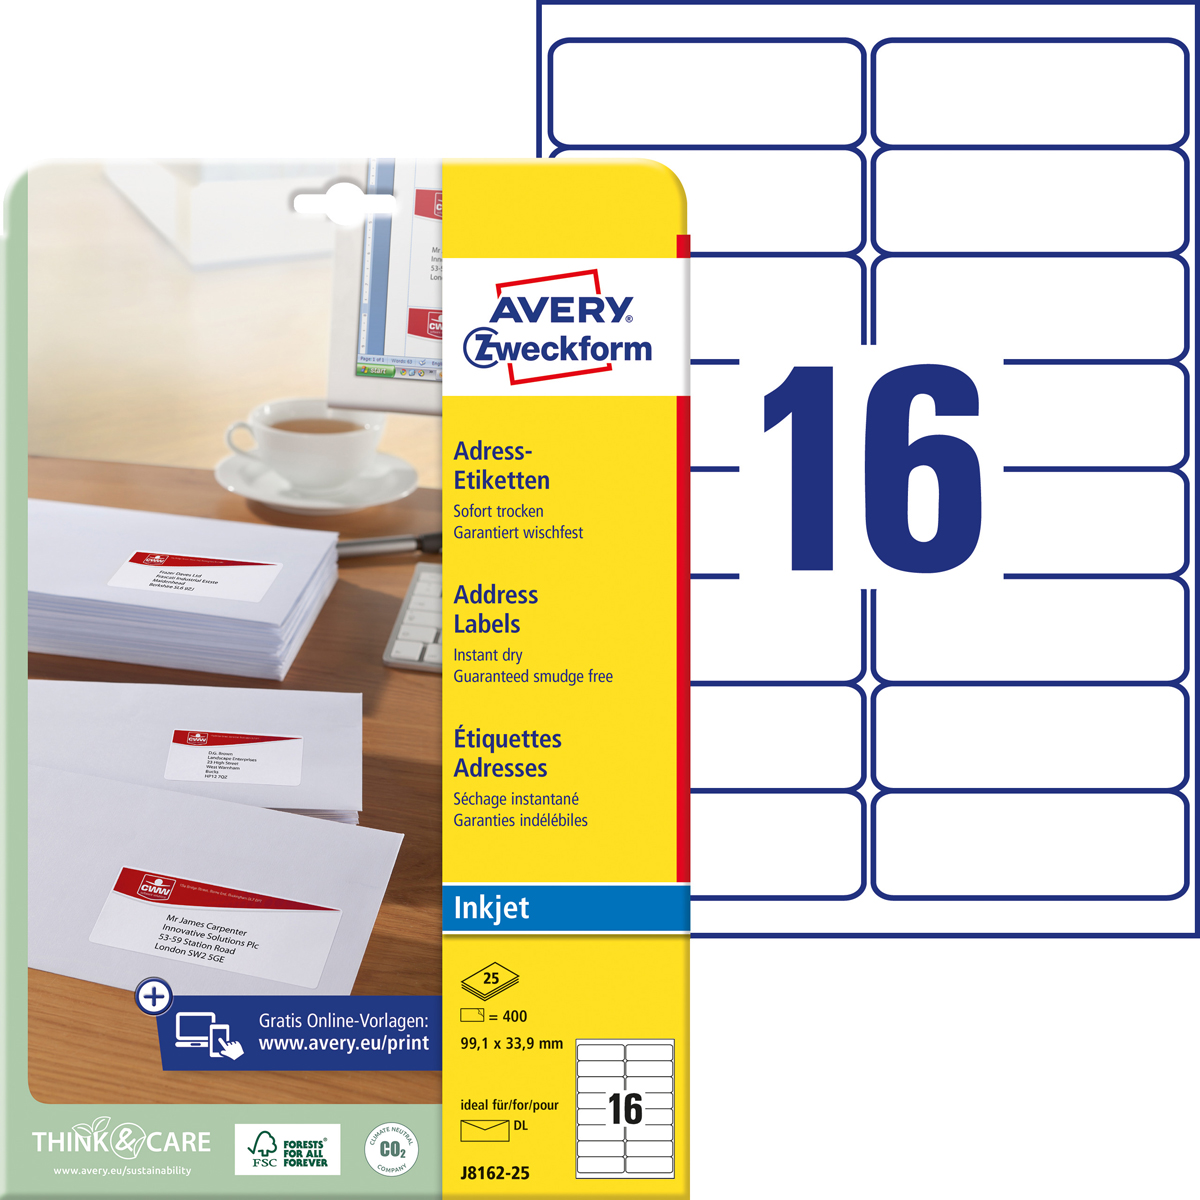 Avery Zweckform J8162-25 Adress-Etiketten, 99,1 x, 33,9 mm, DIN lang Kuverts, 25 Bogen/400 Etiketten